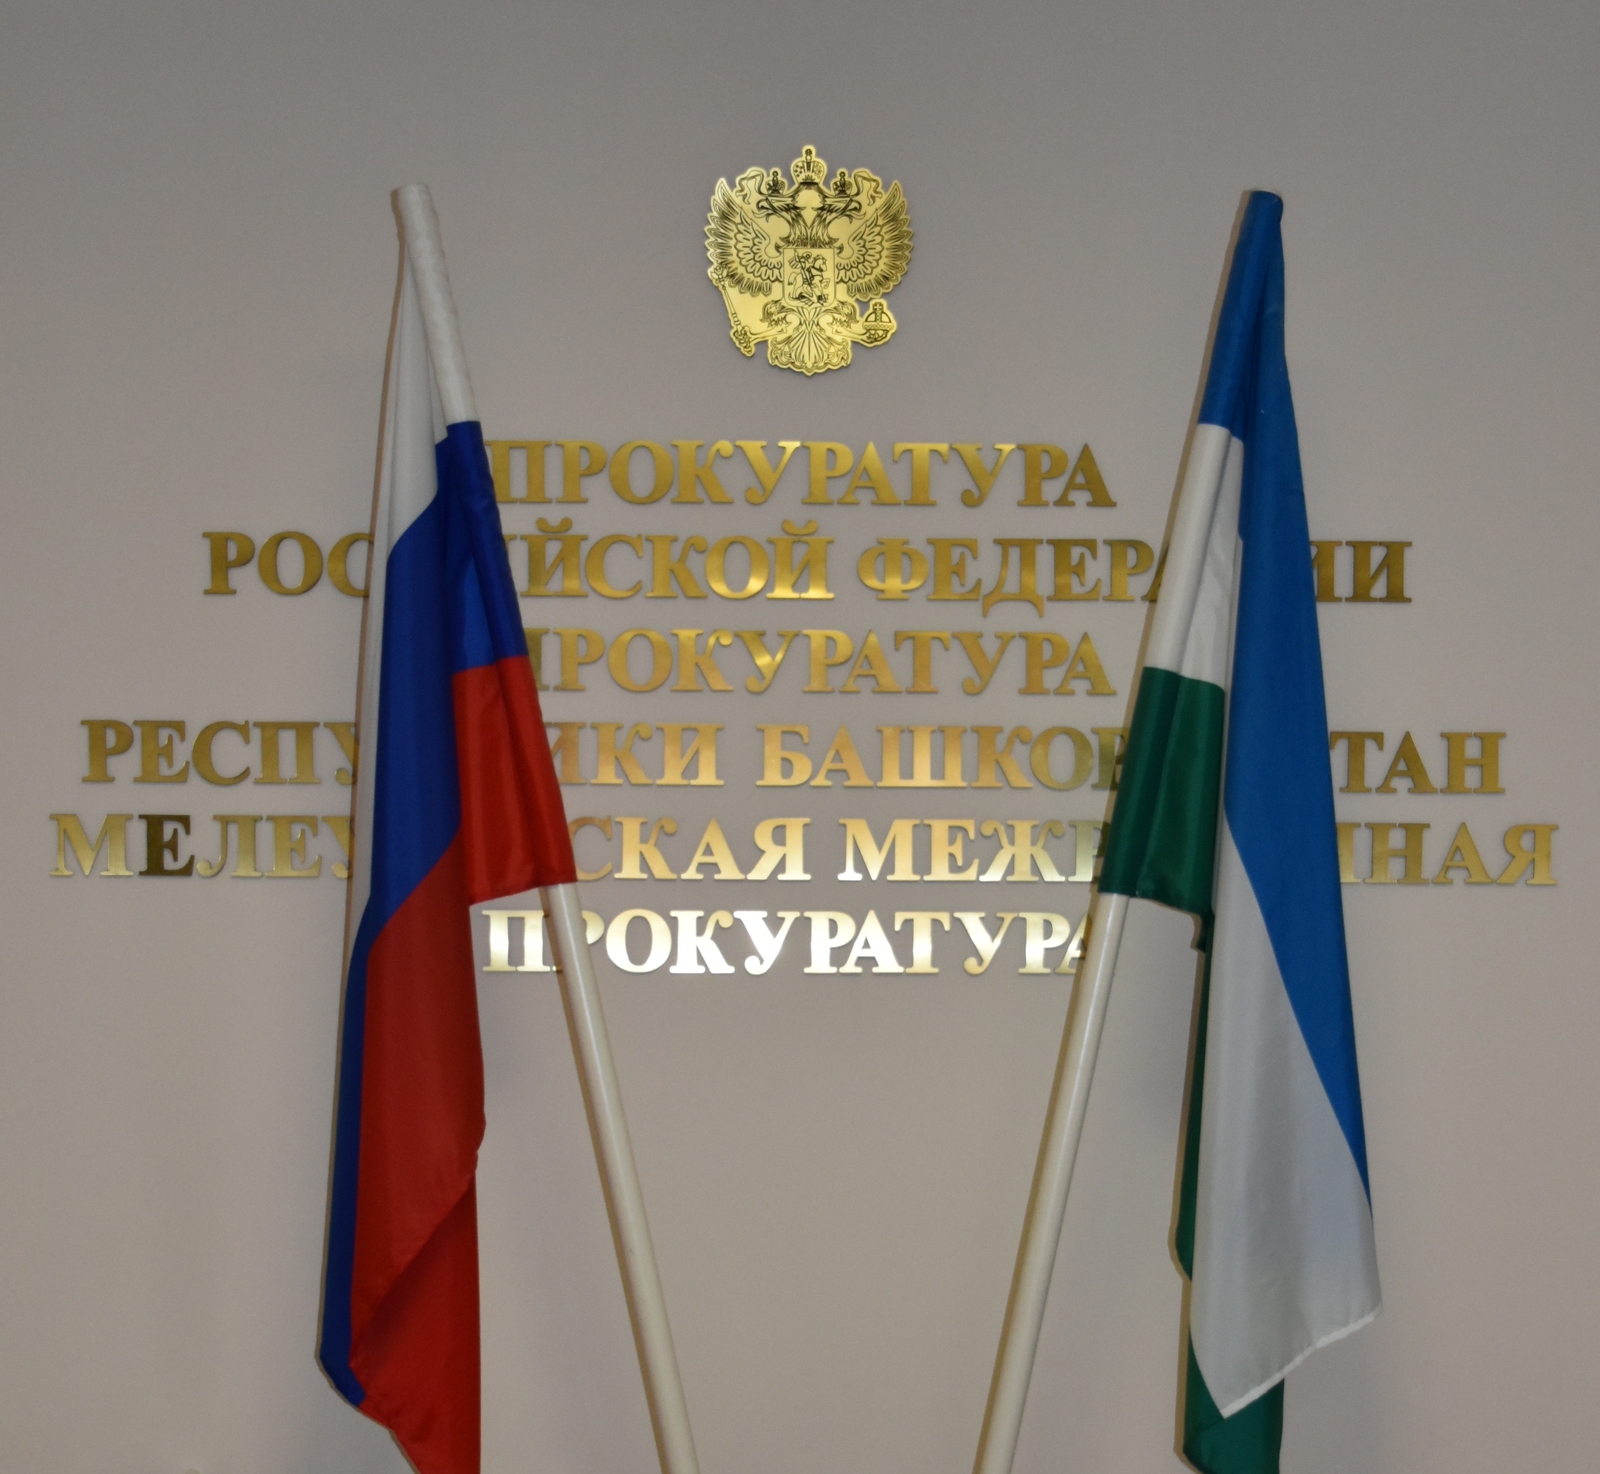 Мелеузовской межрайонной прокуратурой в понедельник, 23 мая, будет организована «горячая линия» по вопросам защиты детей